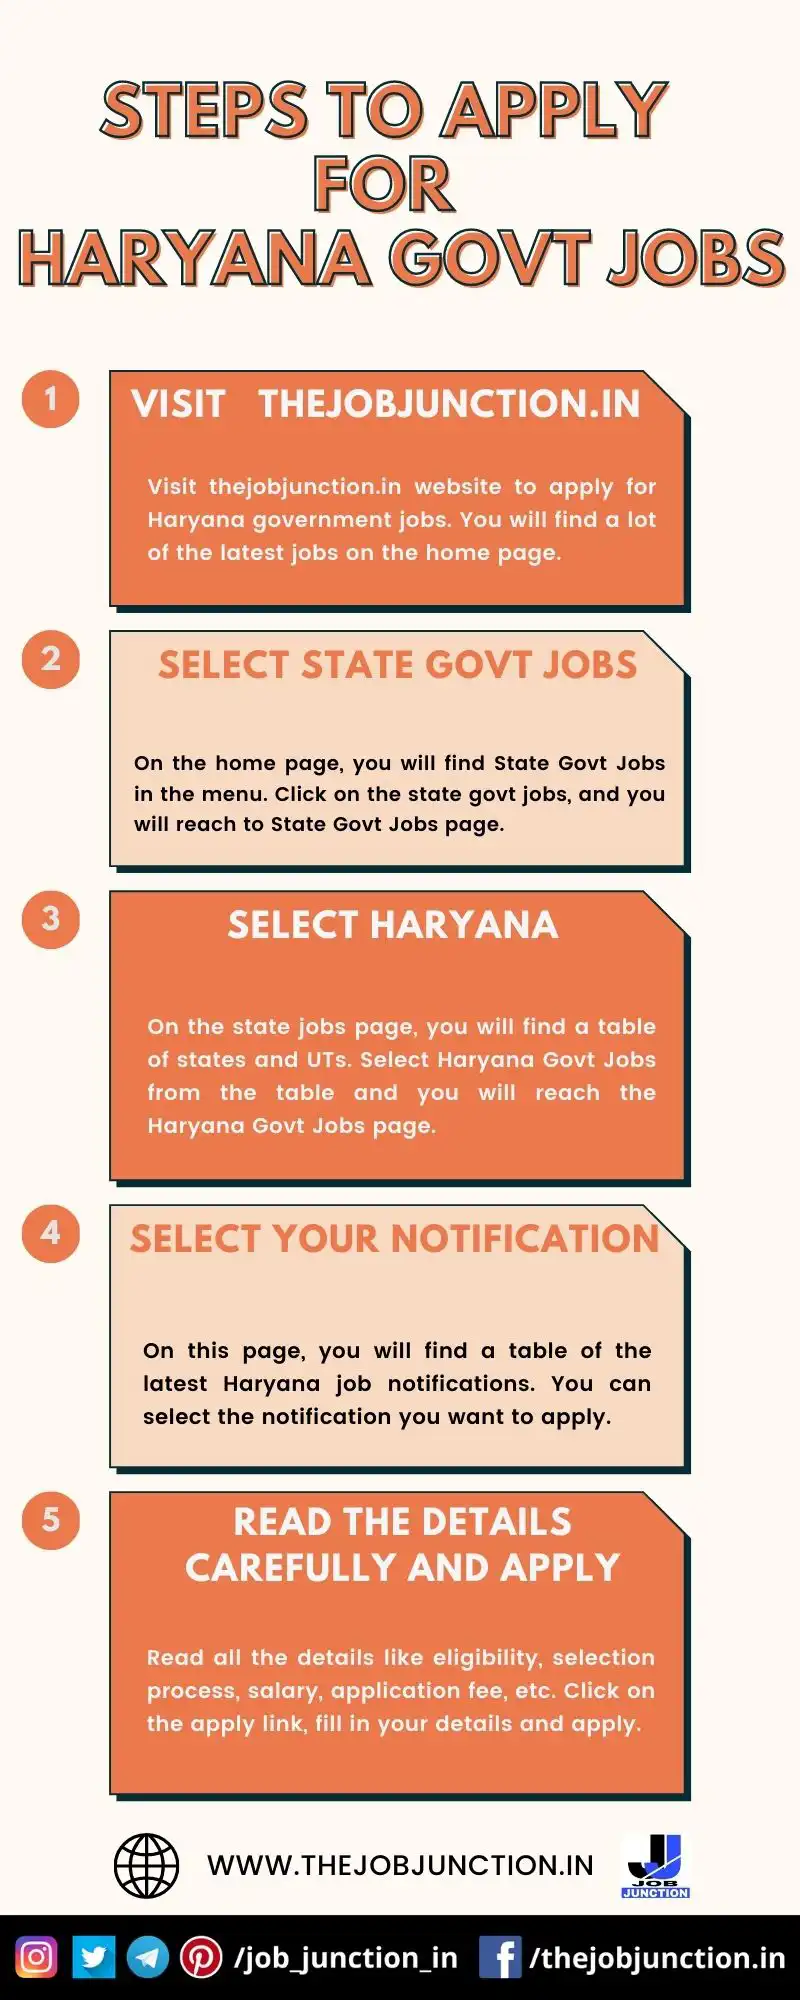 STEPS TO APPLY FOR HARYANA GOVT JOBS